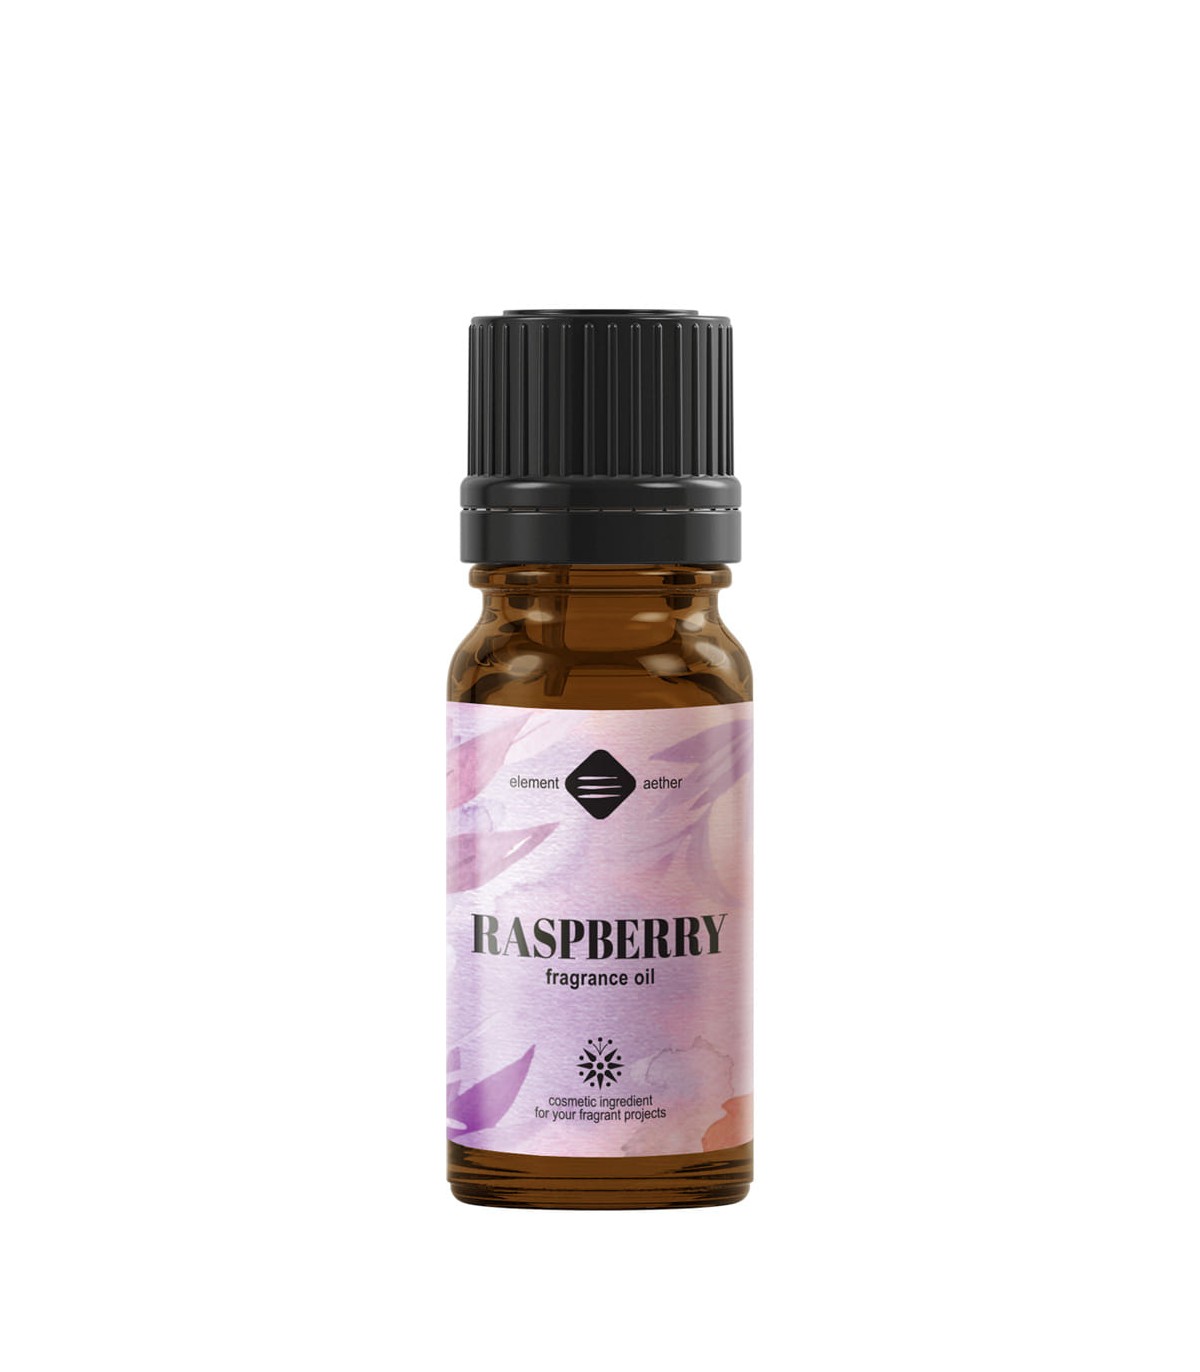 Raspberry Fragrance oil